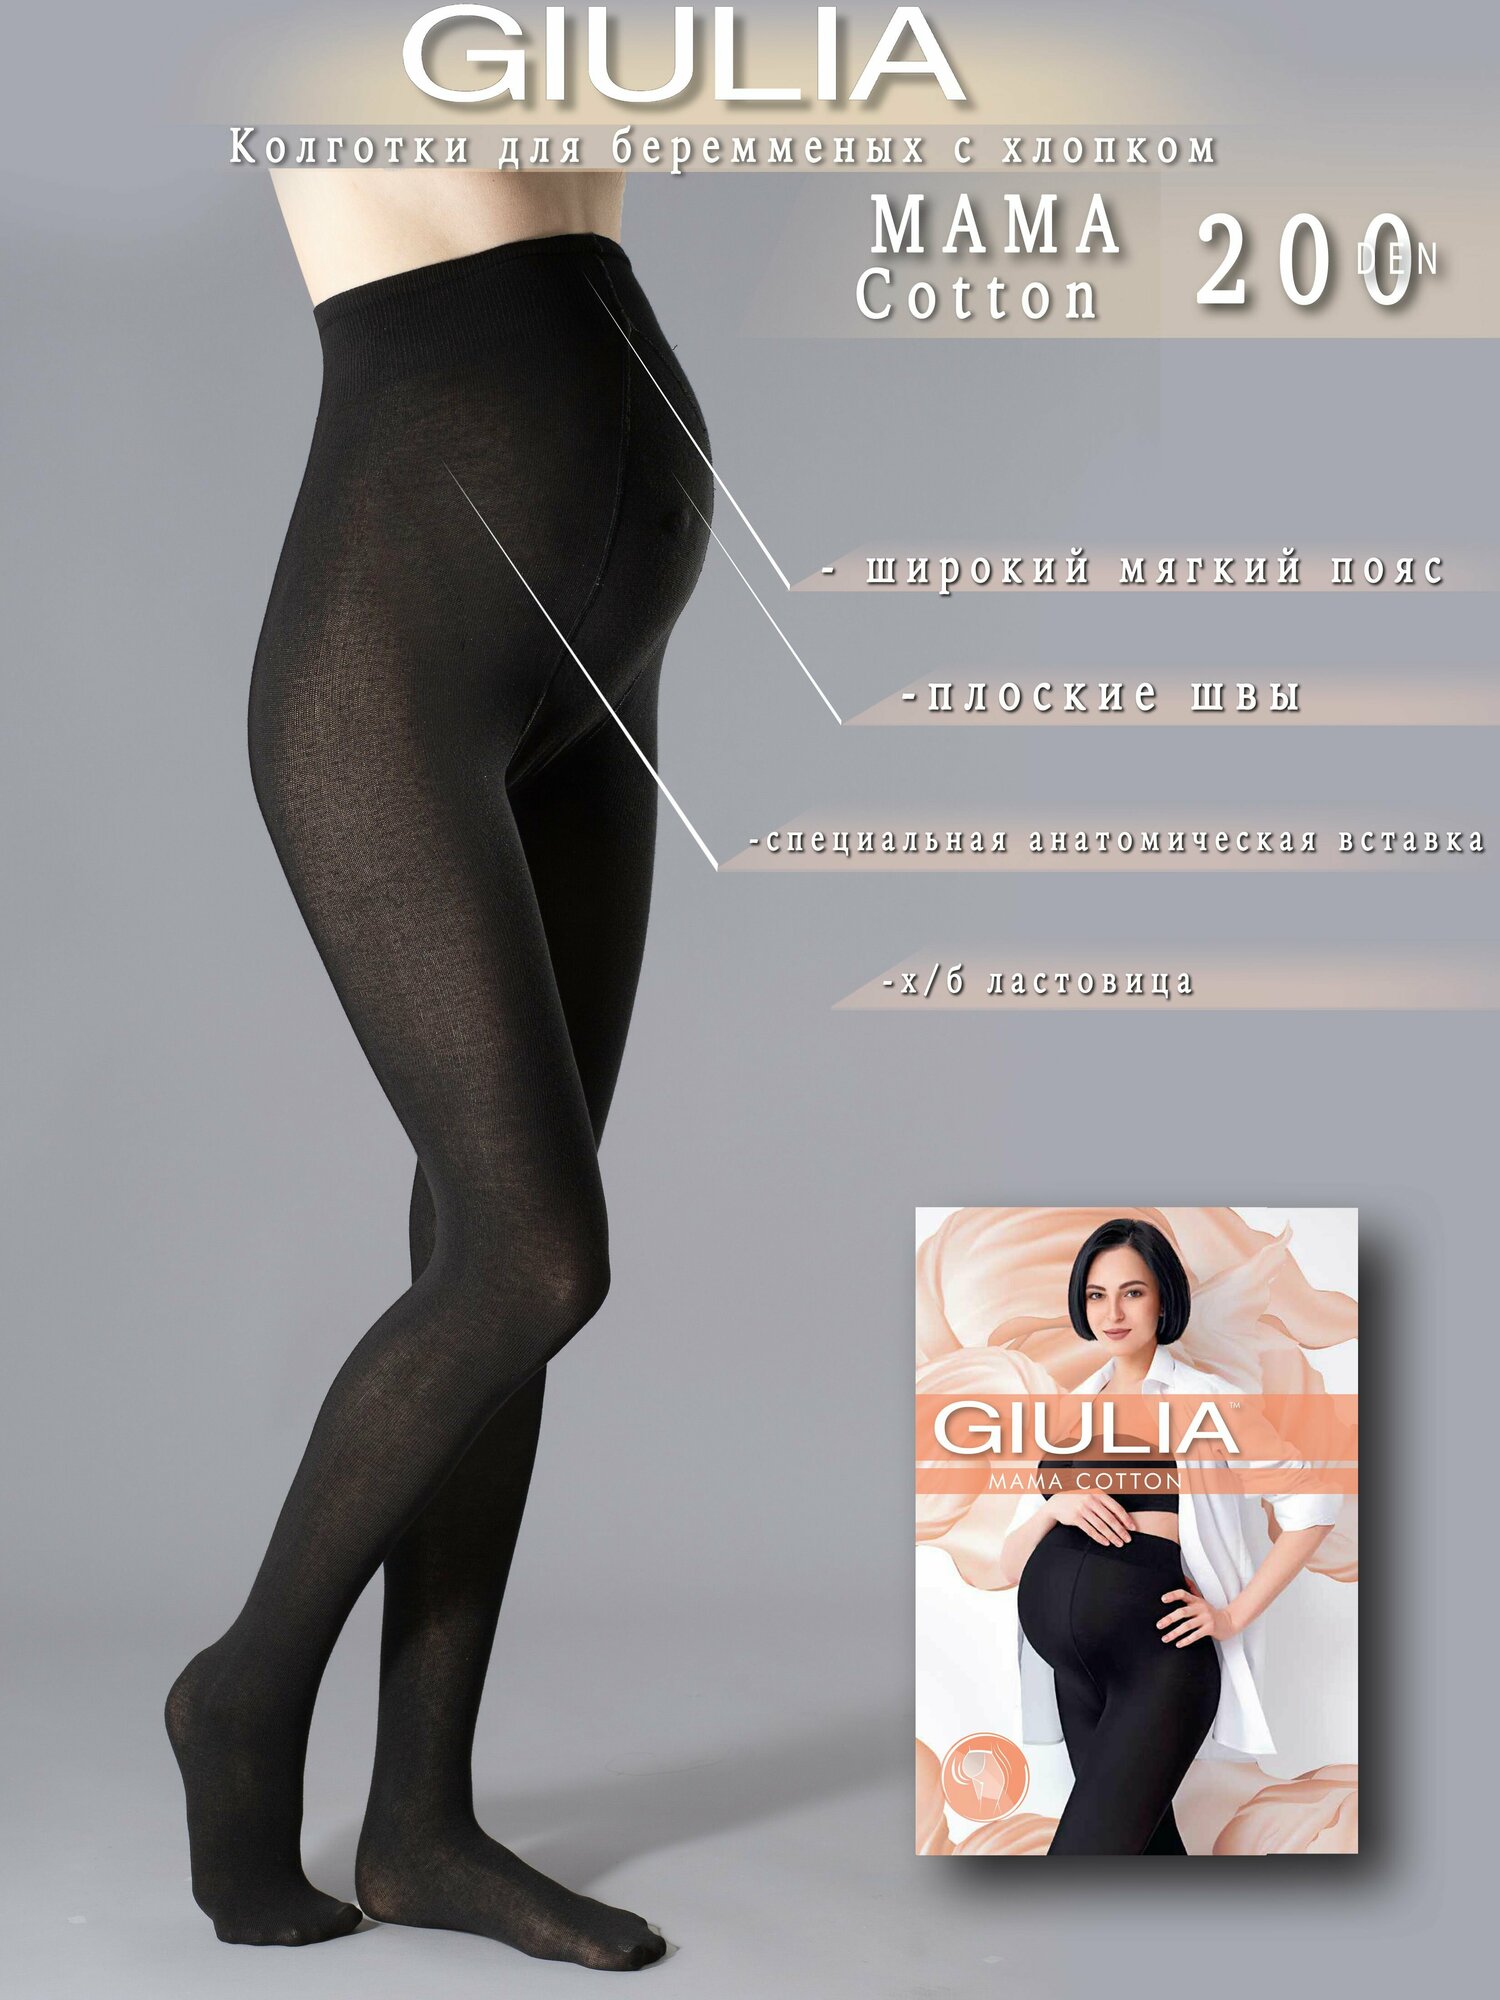 Колготки Giulia MAMA COTTON 200 размер 3/M, nero (черный) — купить в  интернет-магазине по низкой цене на Яндекс Маркете